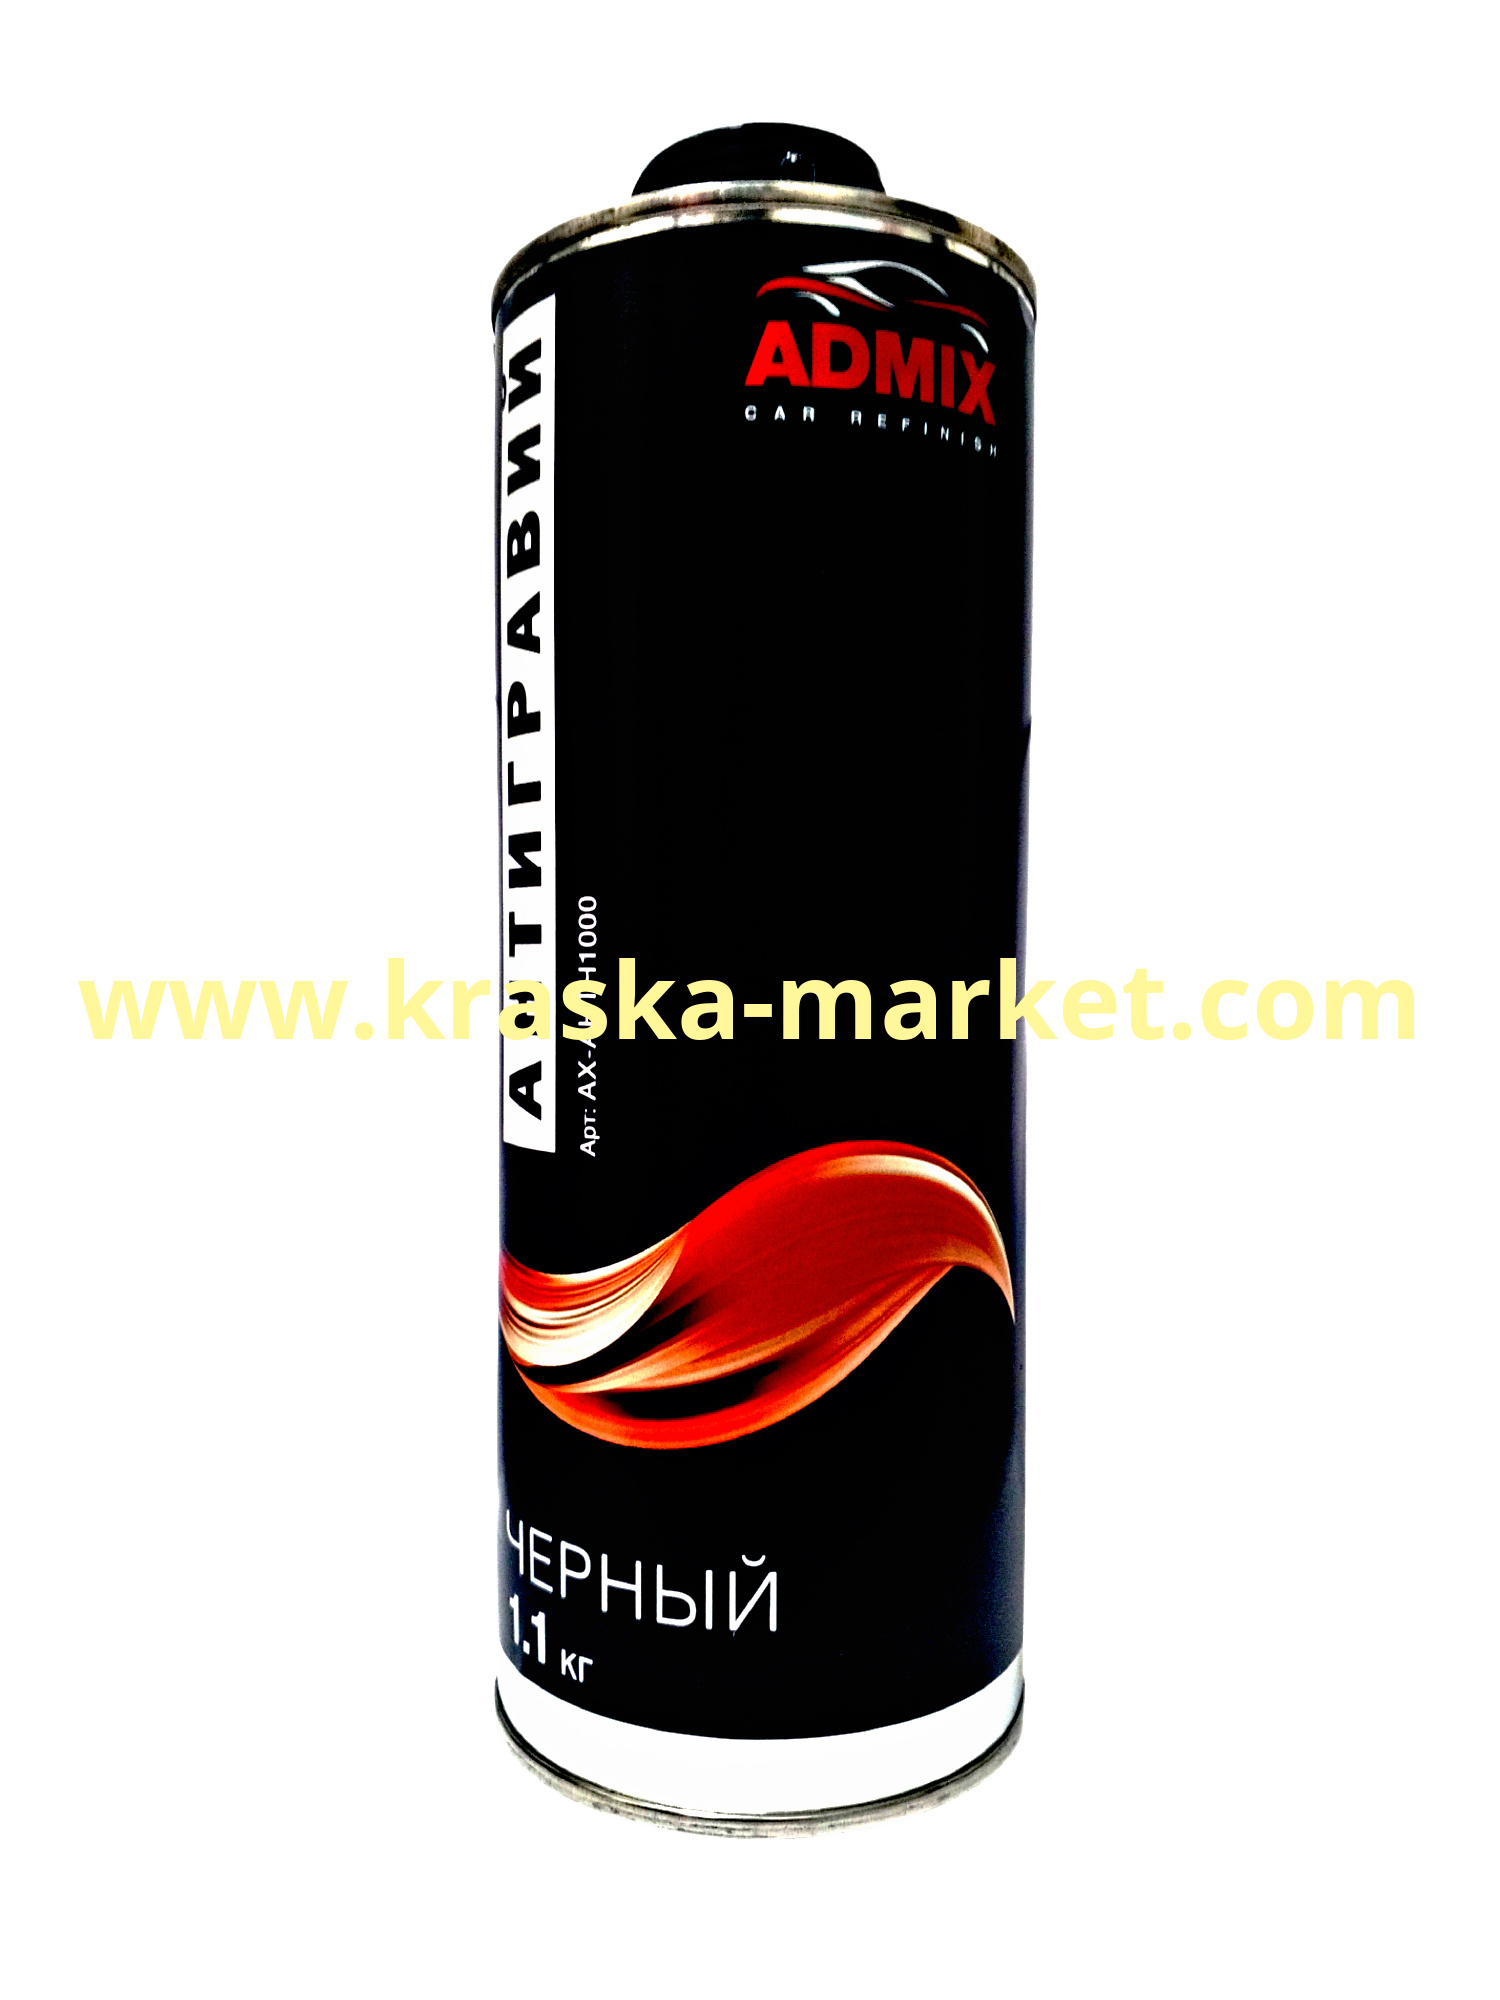 Антигравийное покрытие. Цвет: чёрный. Объем(м3): 1,1 кг. Торговая марка: ADMIX.